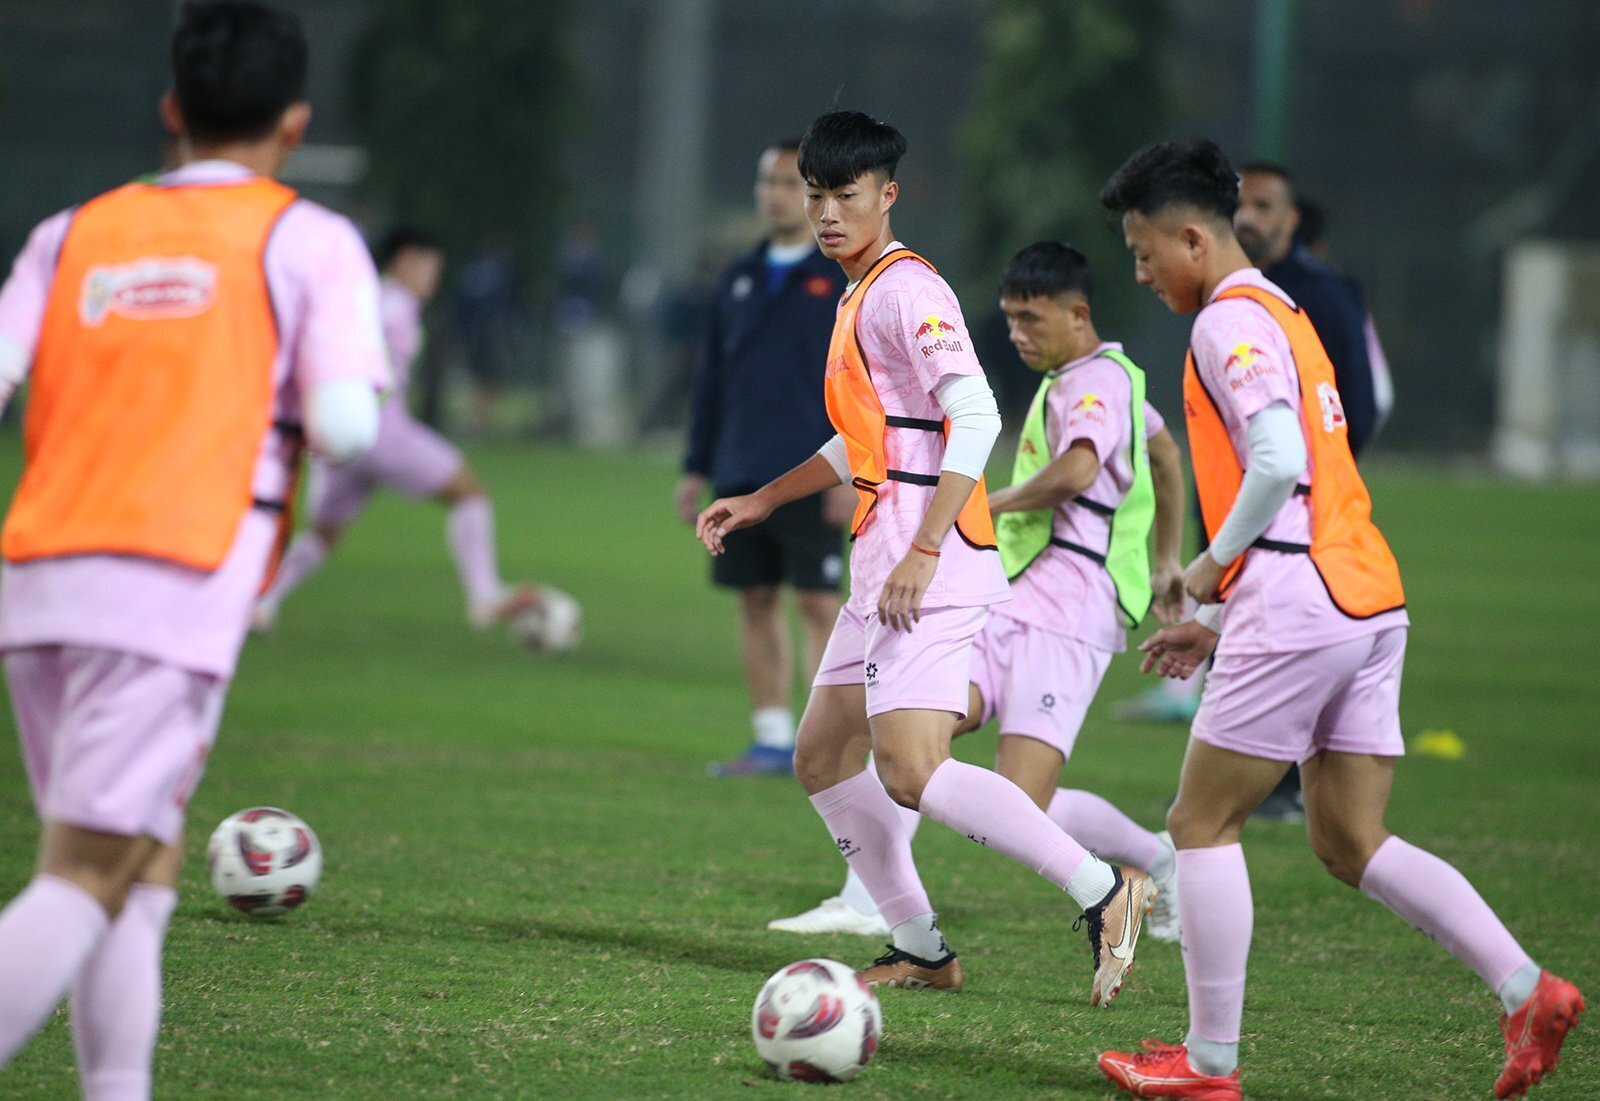 Nguyễn Văn Trường là một trong số các cầu thủ U23 được đôn lên đội tuyển quốc gia. (Ảnh: Hoàng Dương)